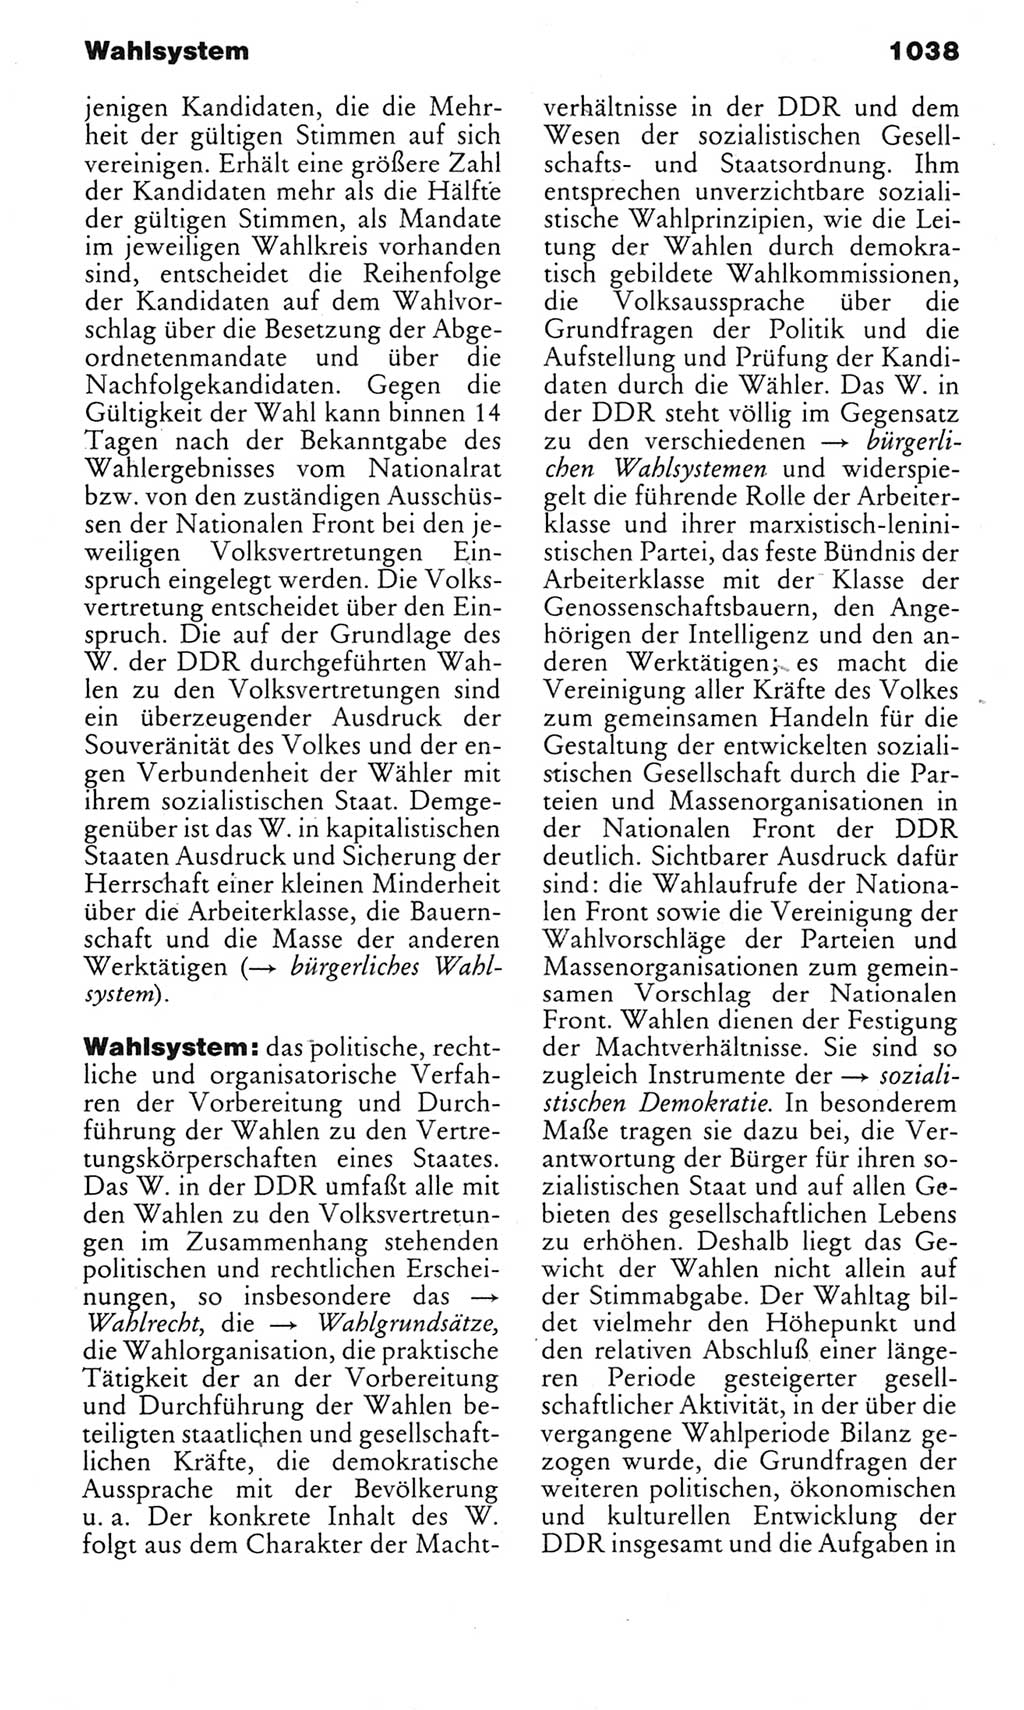 Kleines politisches Wörterbuch [Deutsche Demokratische Republik (DDR)] 1983, Seite 1038 (Kl. pol. Wb. DDR 1983, S. 1038)